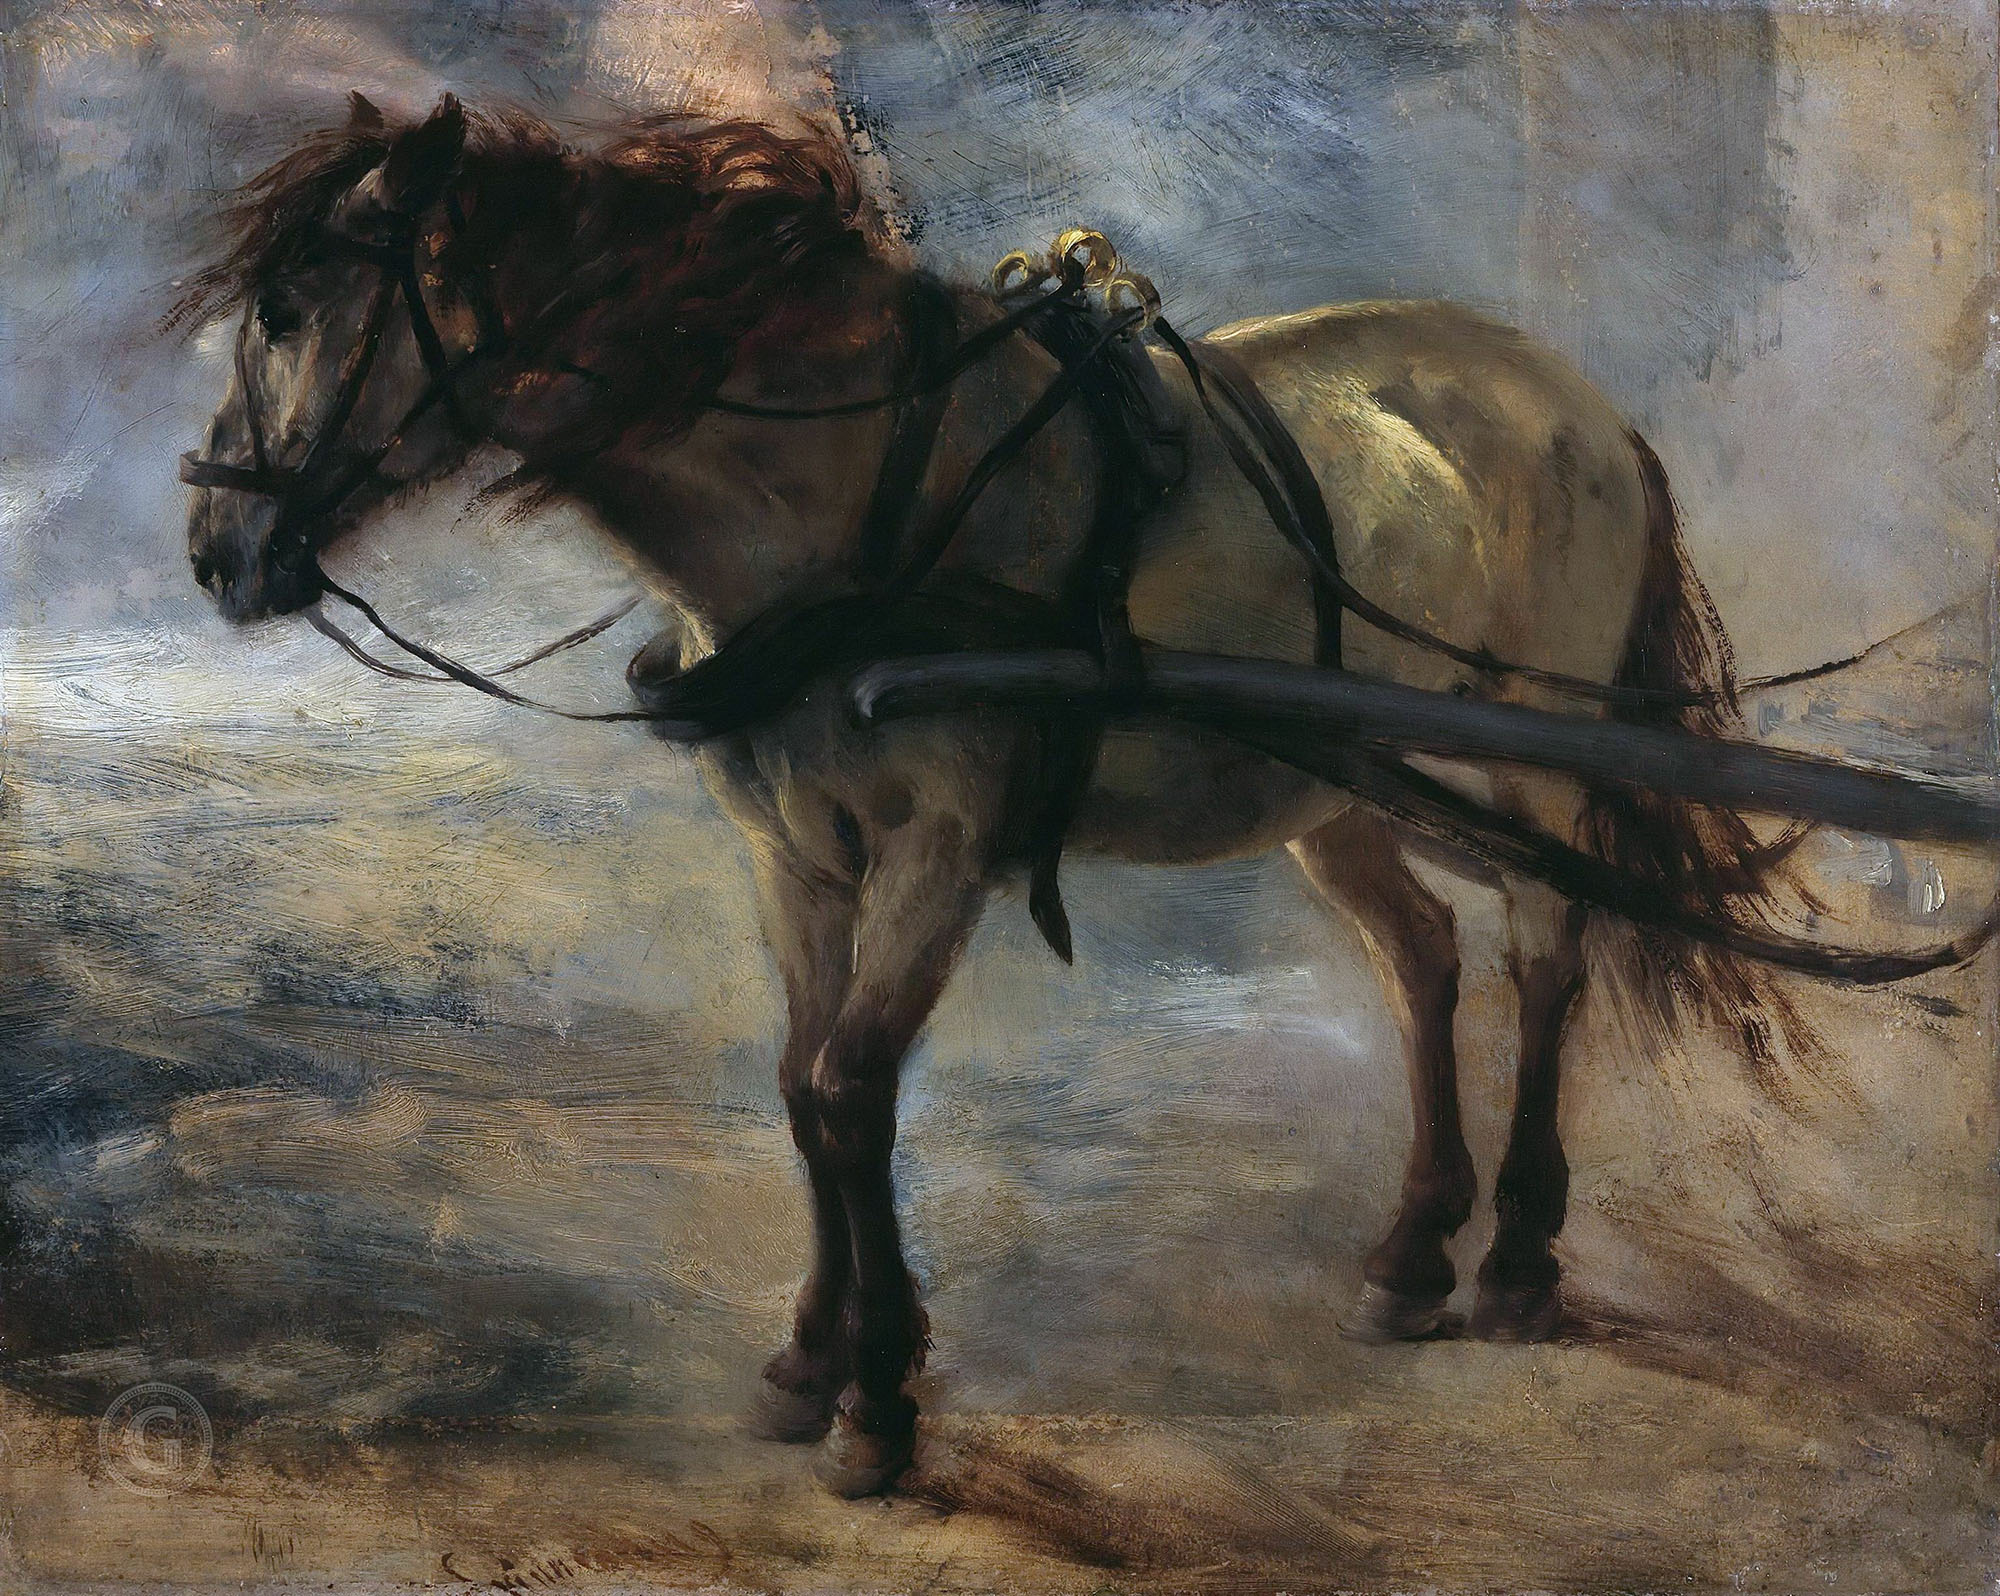 Адольф Менцель. "Запряжённая лошадь". Около 1840. Музей Берггрюна, Берлин.